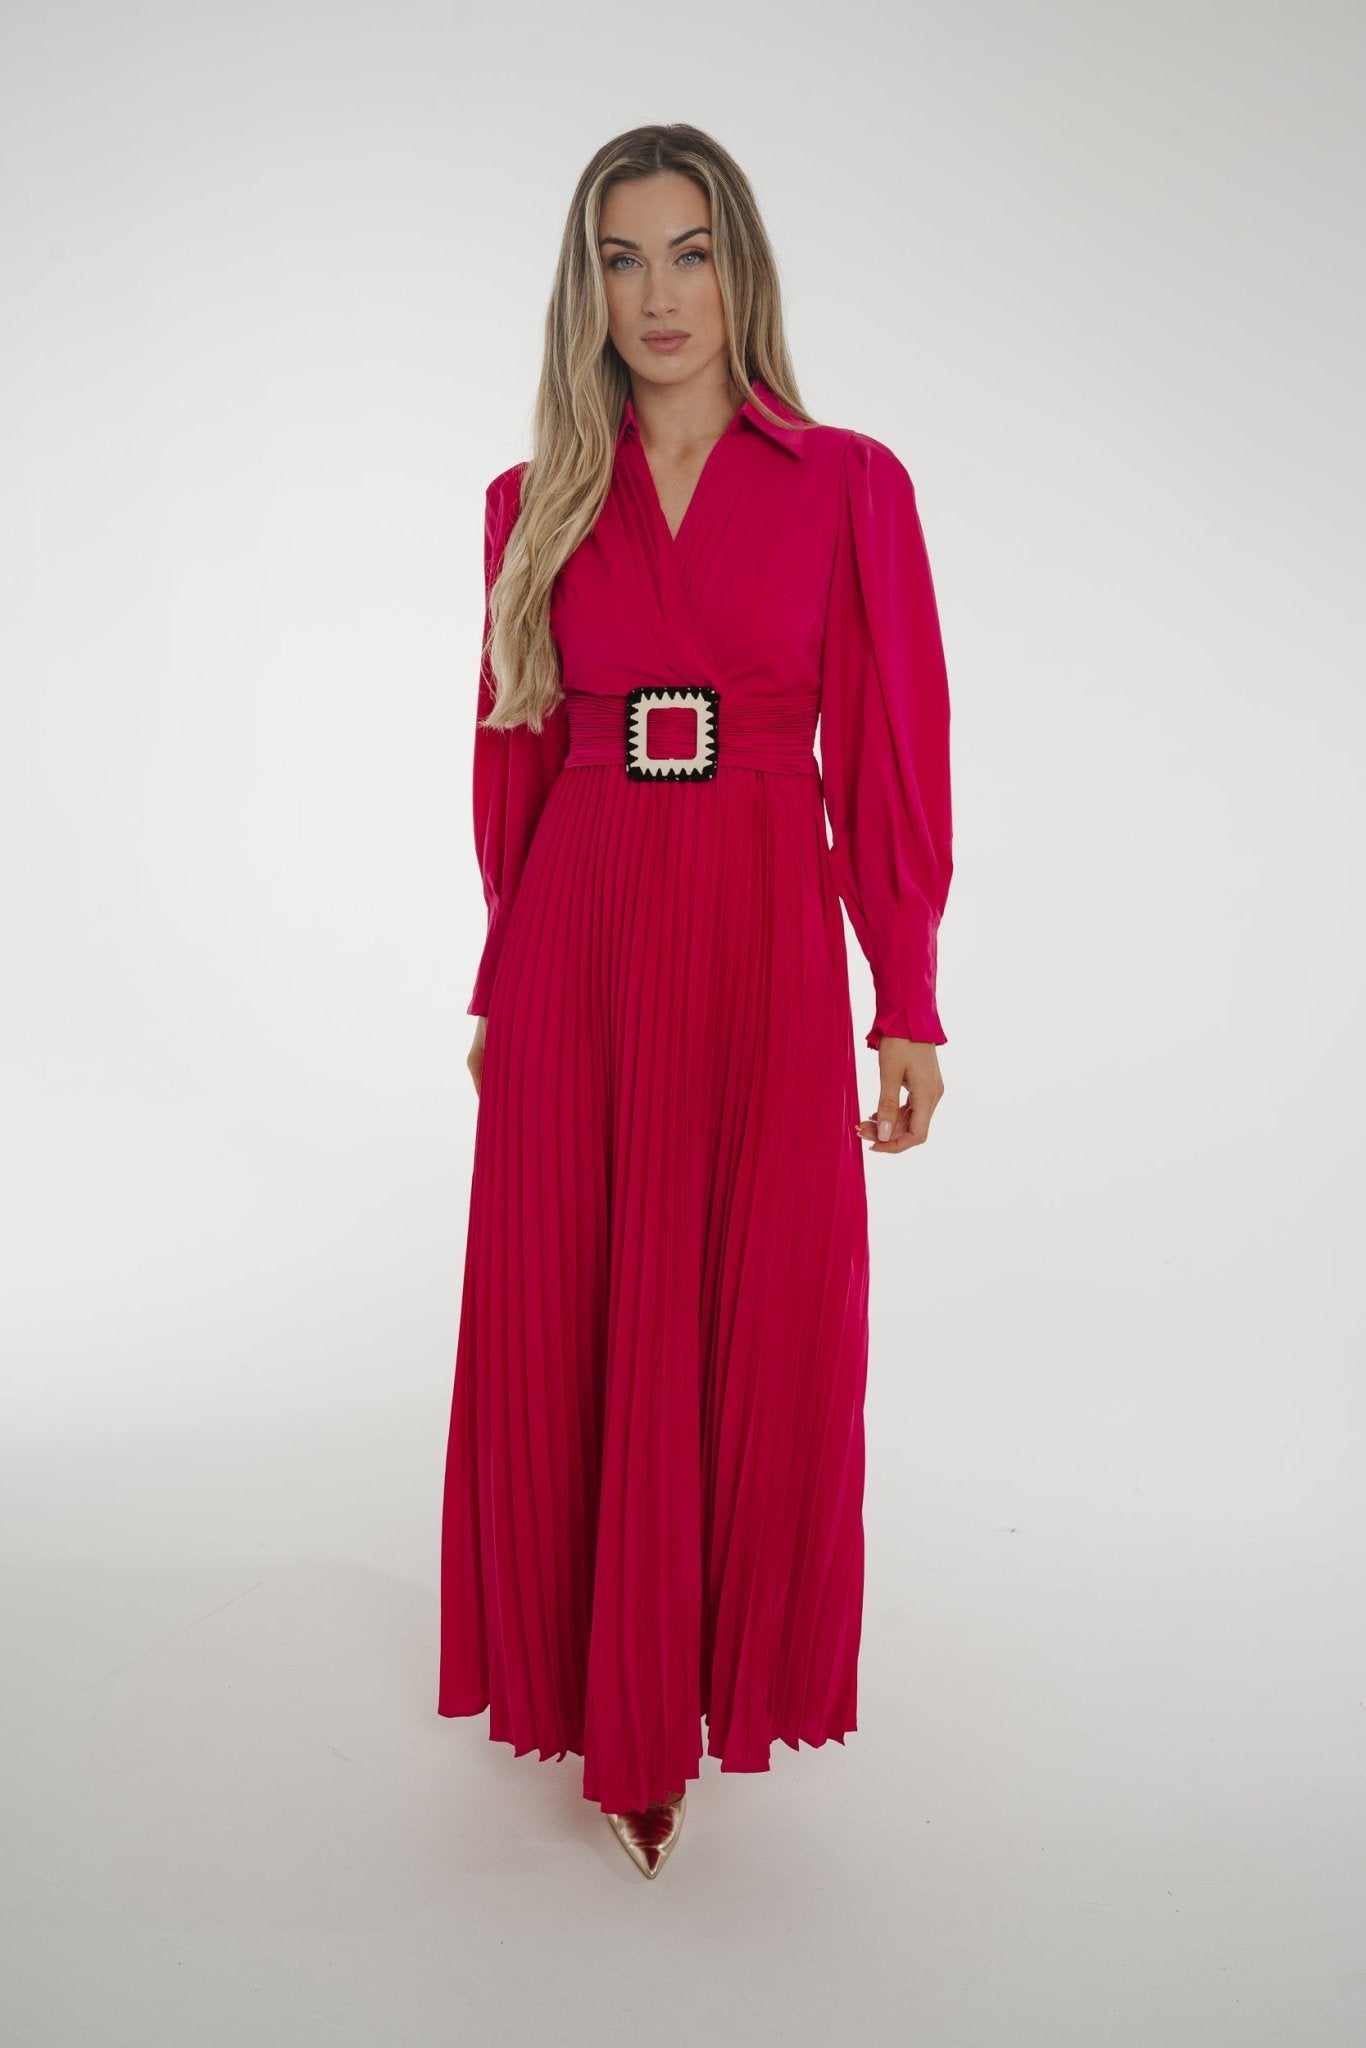 Taylor Belted Pleat Dress In Fuchsia - The Walk in Wardrobe